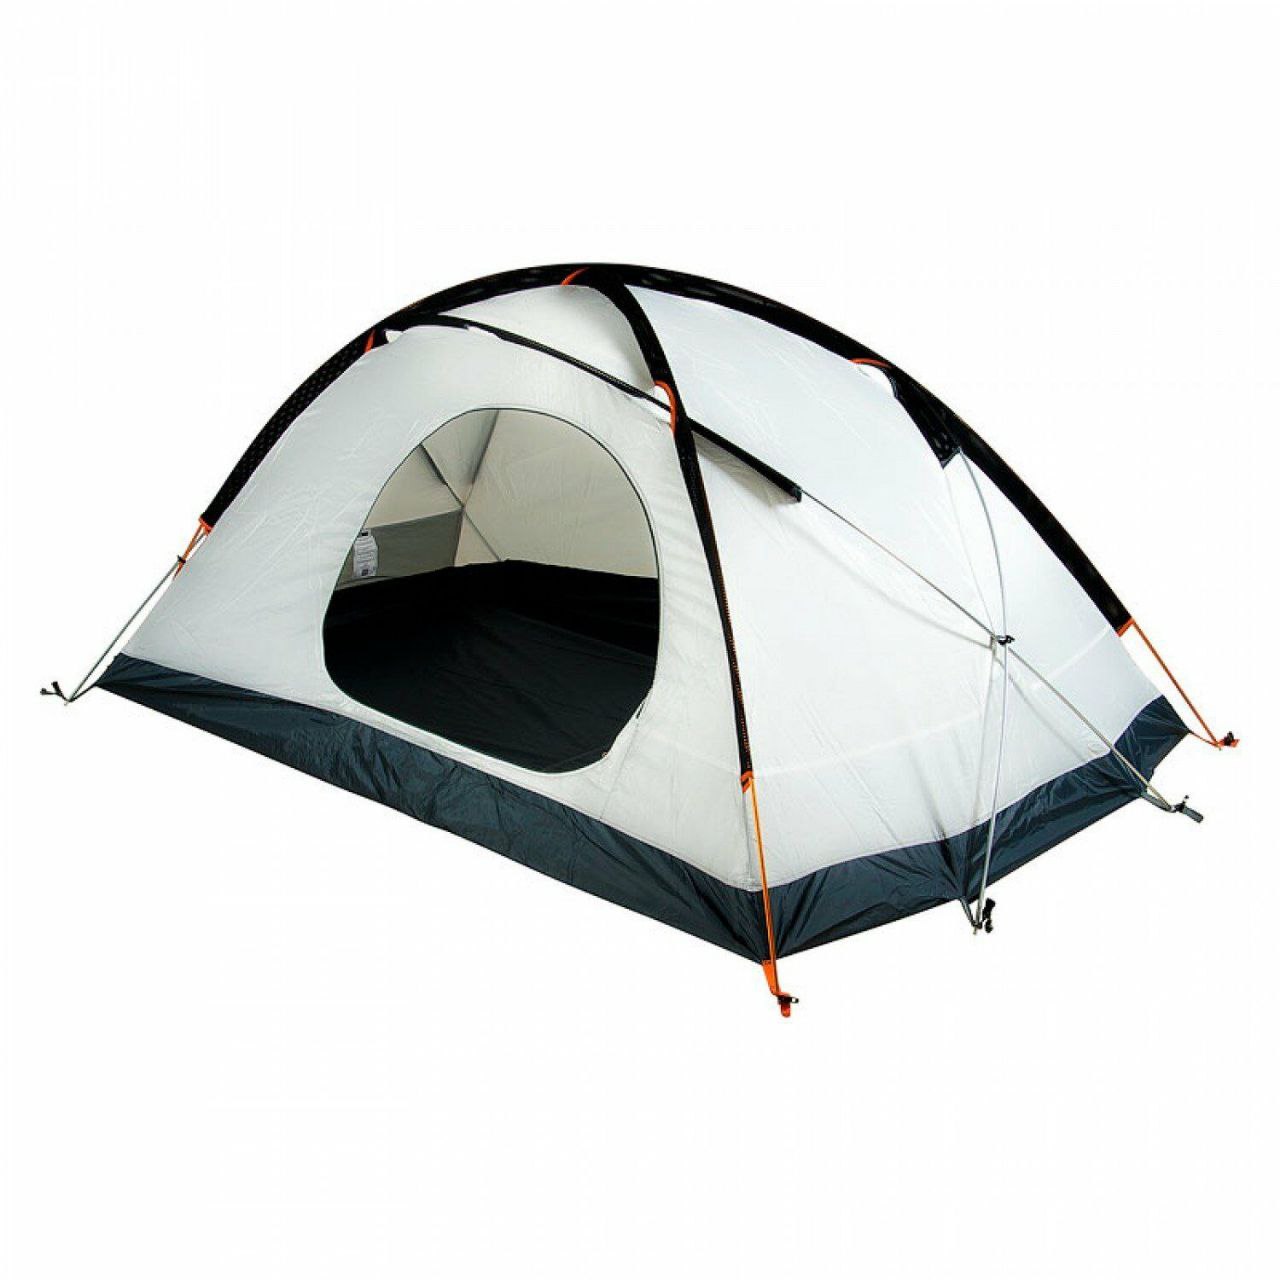 Peak 3 person tent